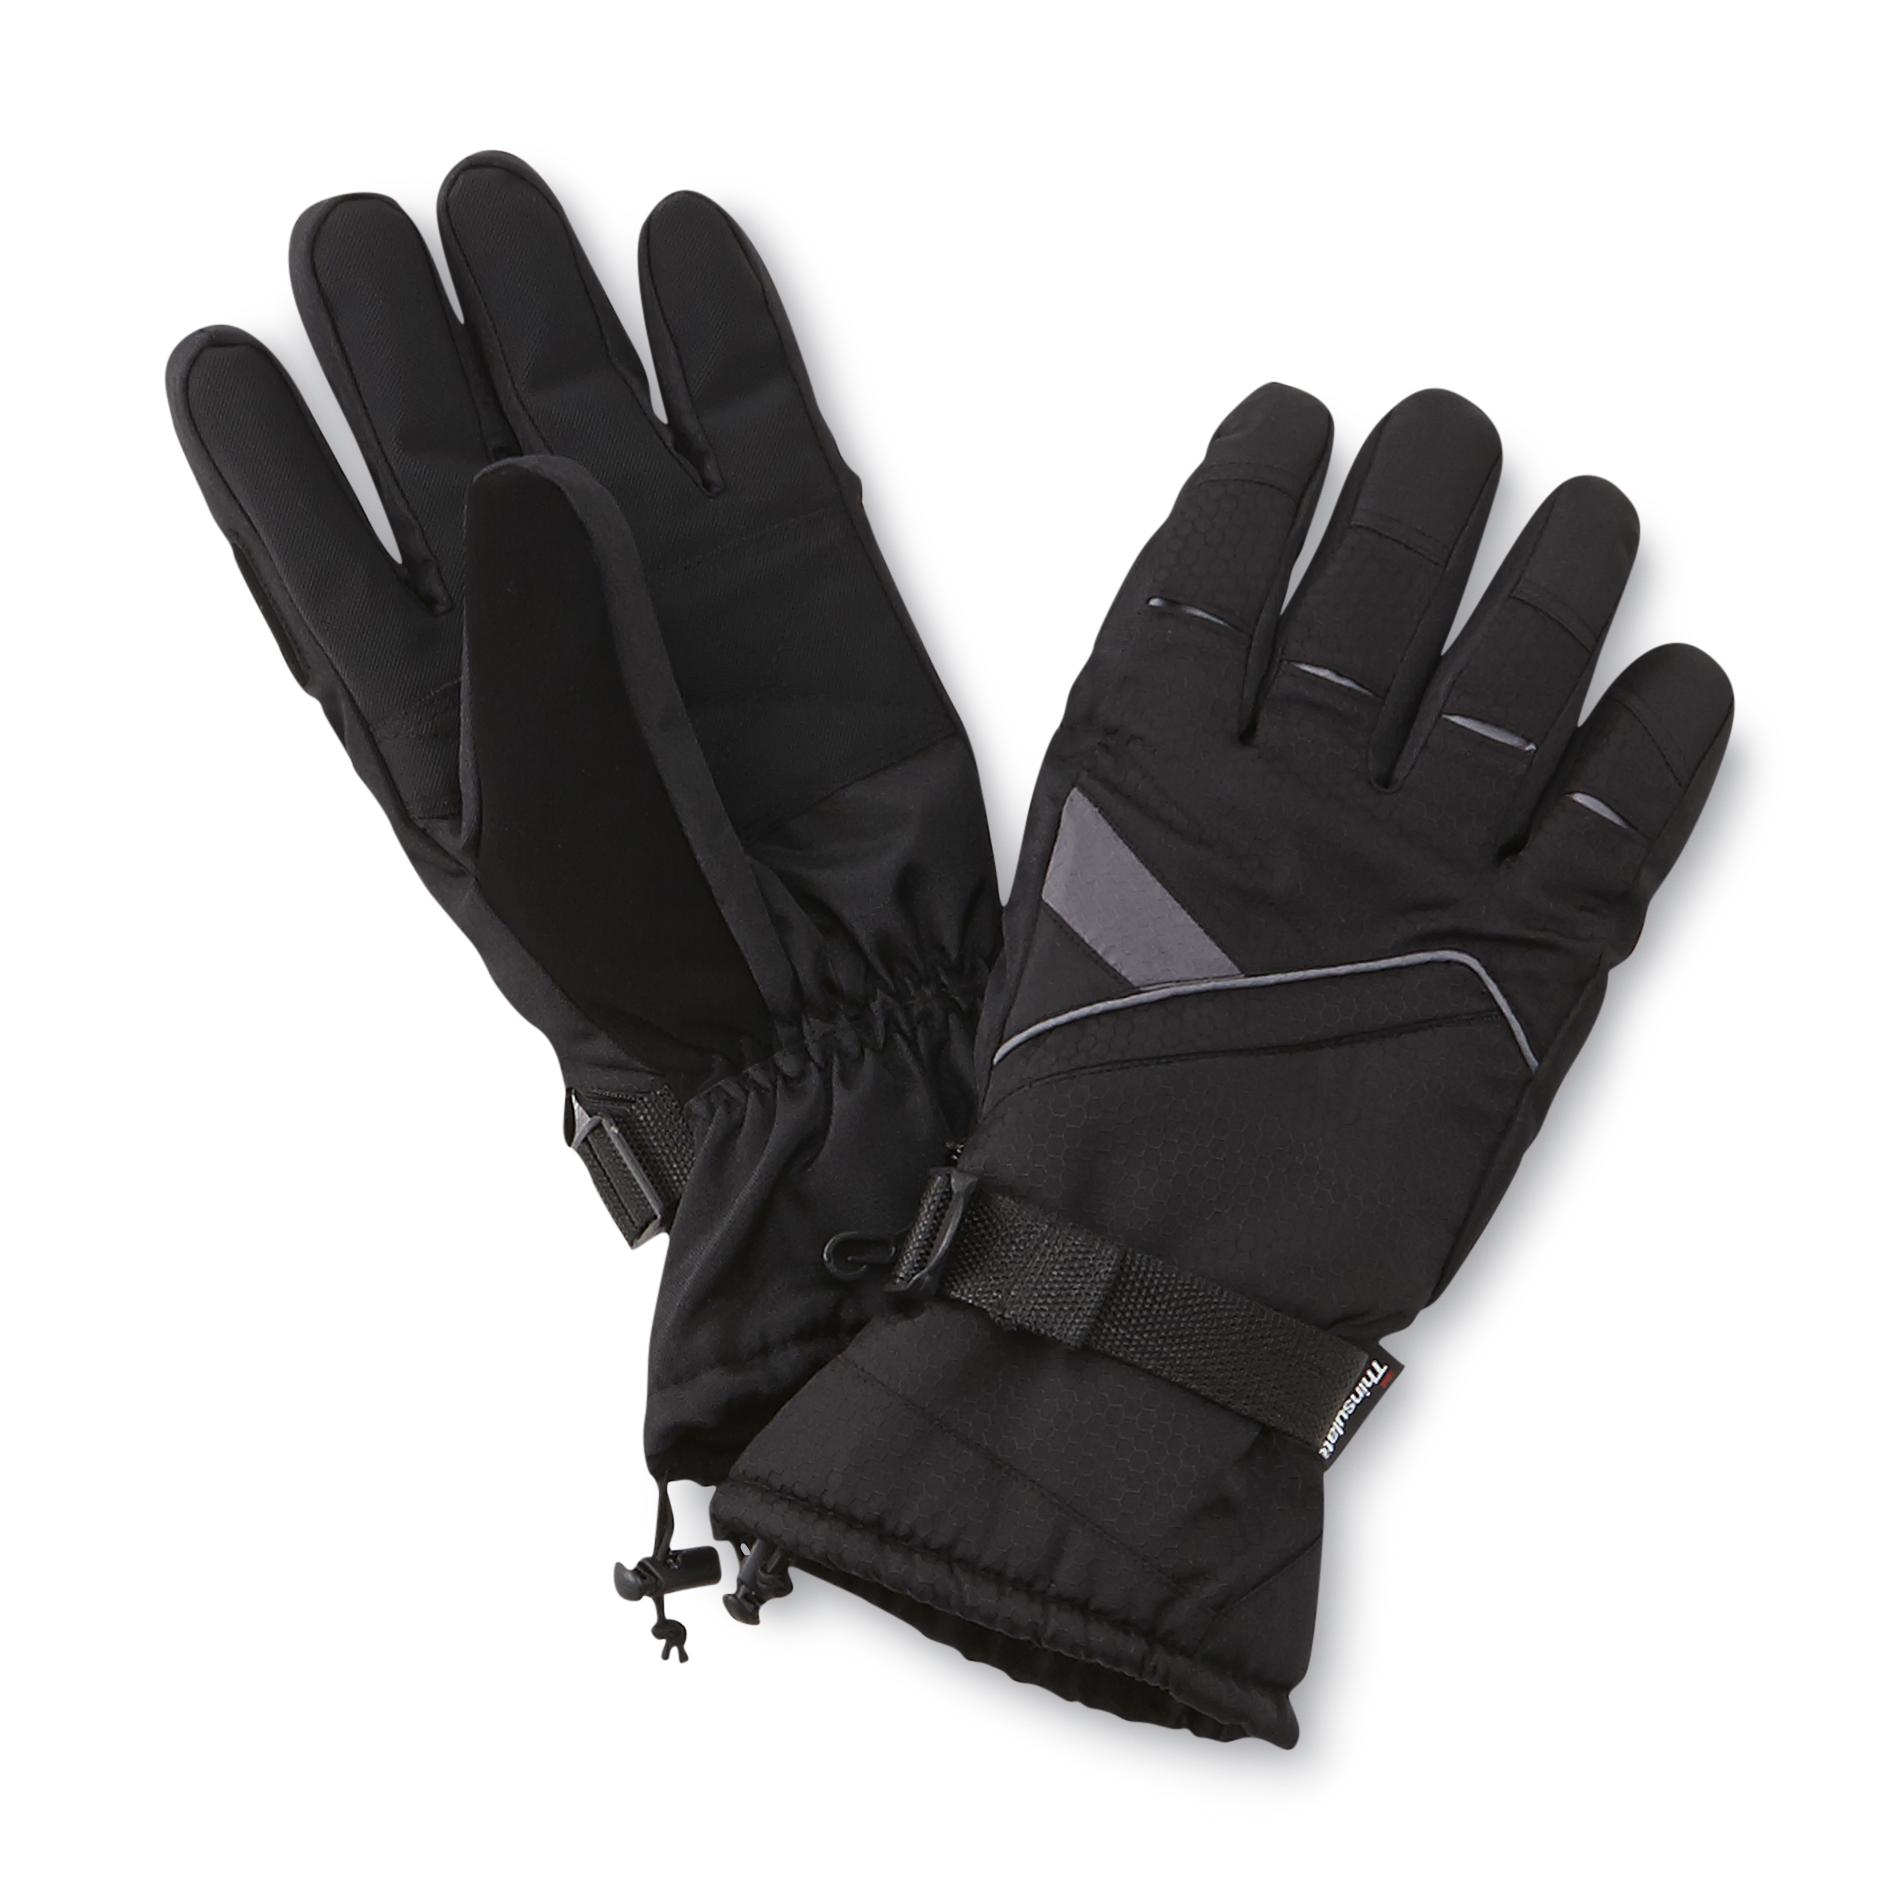 NordicTrack Men's Sierra Insulated Ski Gloves